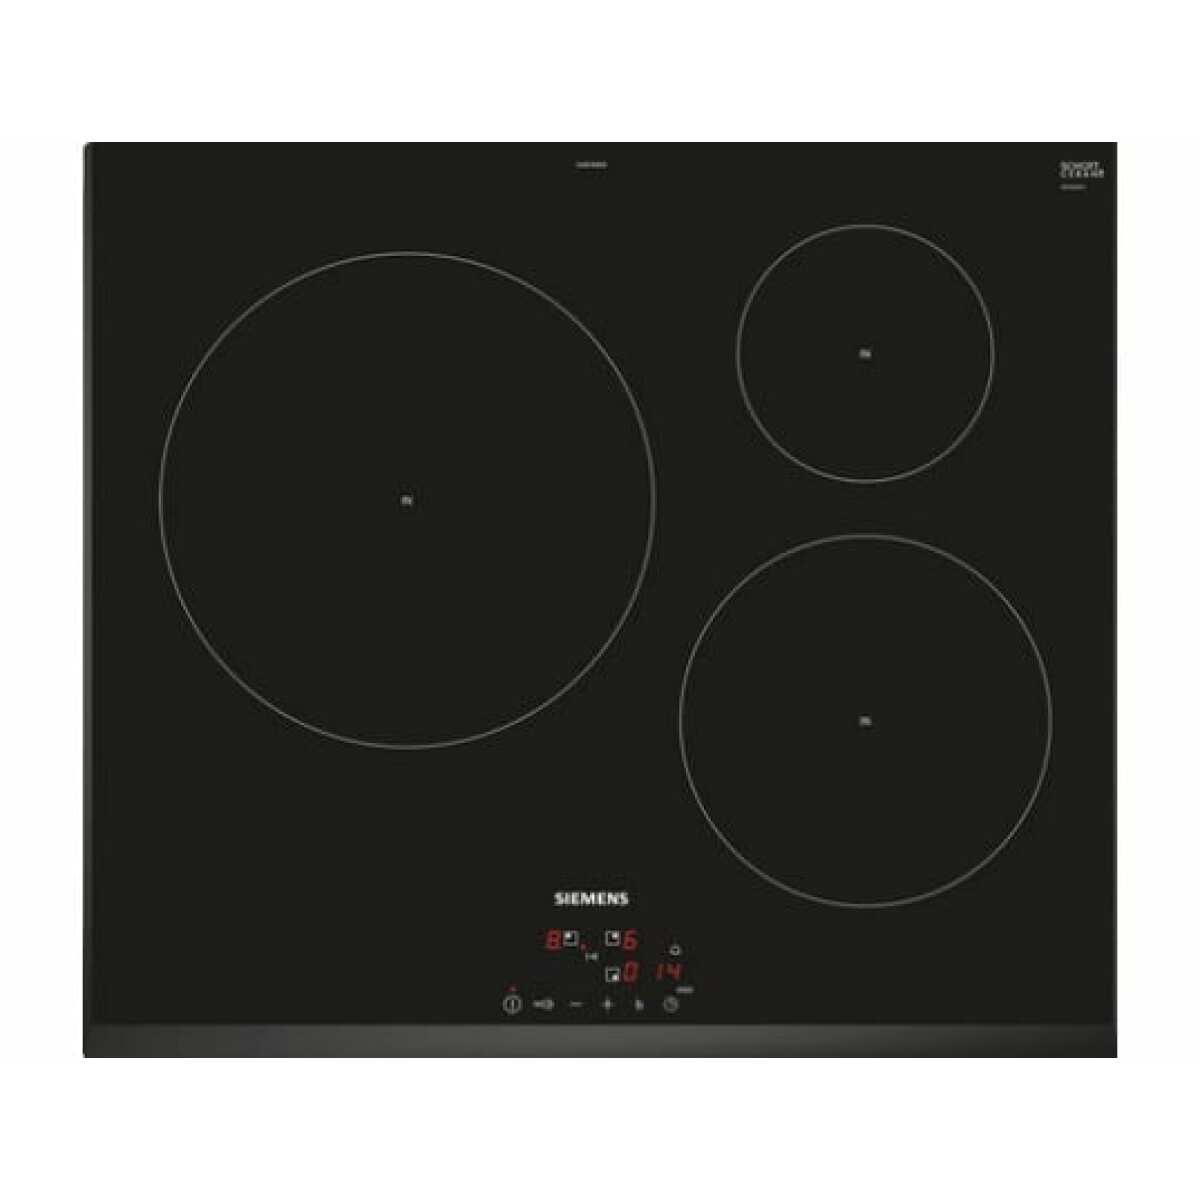 Table de cuisson induction 60cm 3 feux 4600w noir – eu651bjb1e – SIEMENS